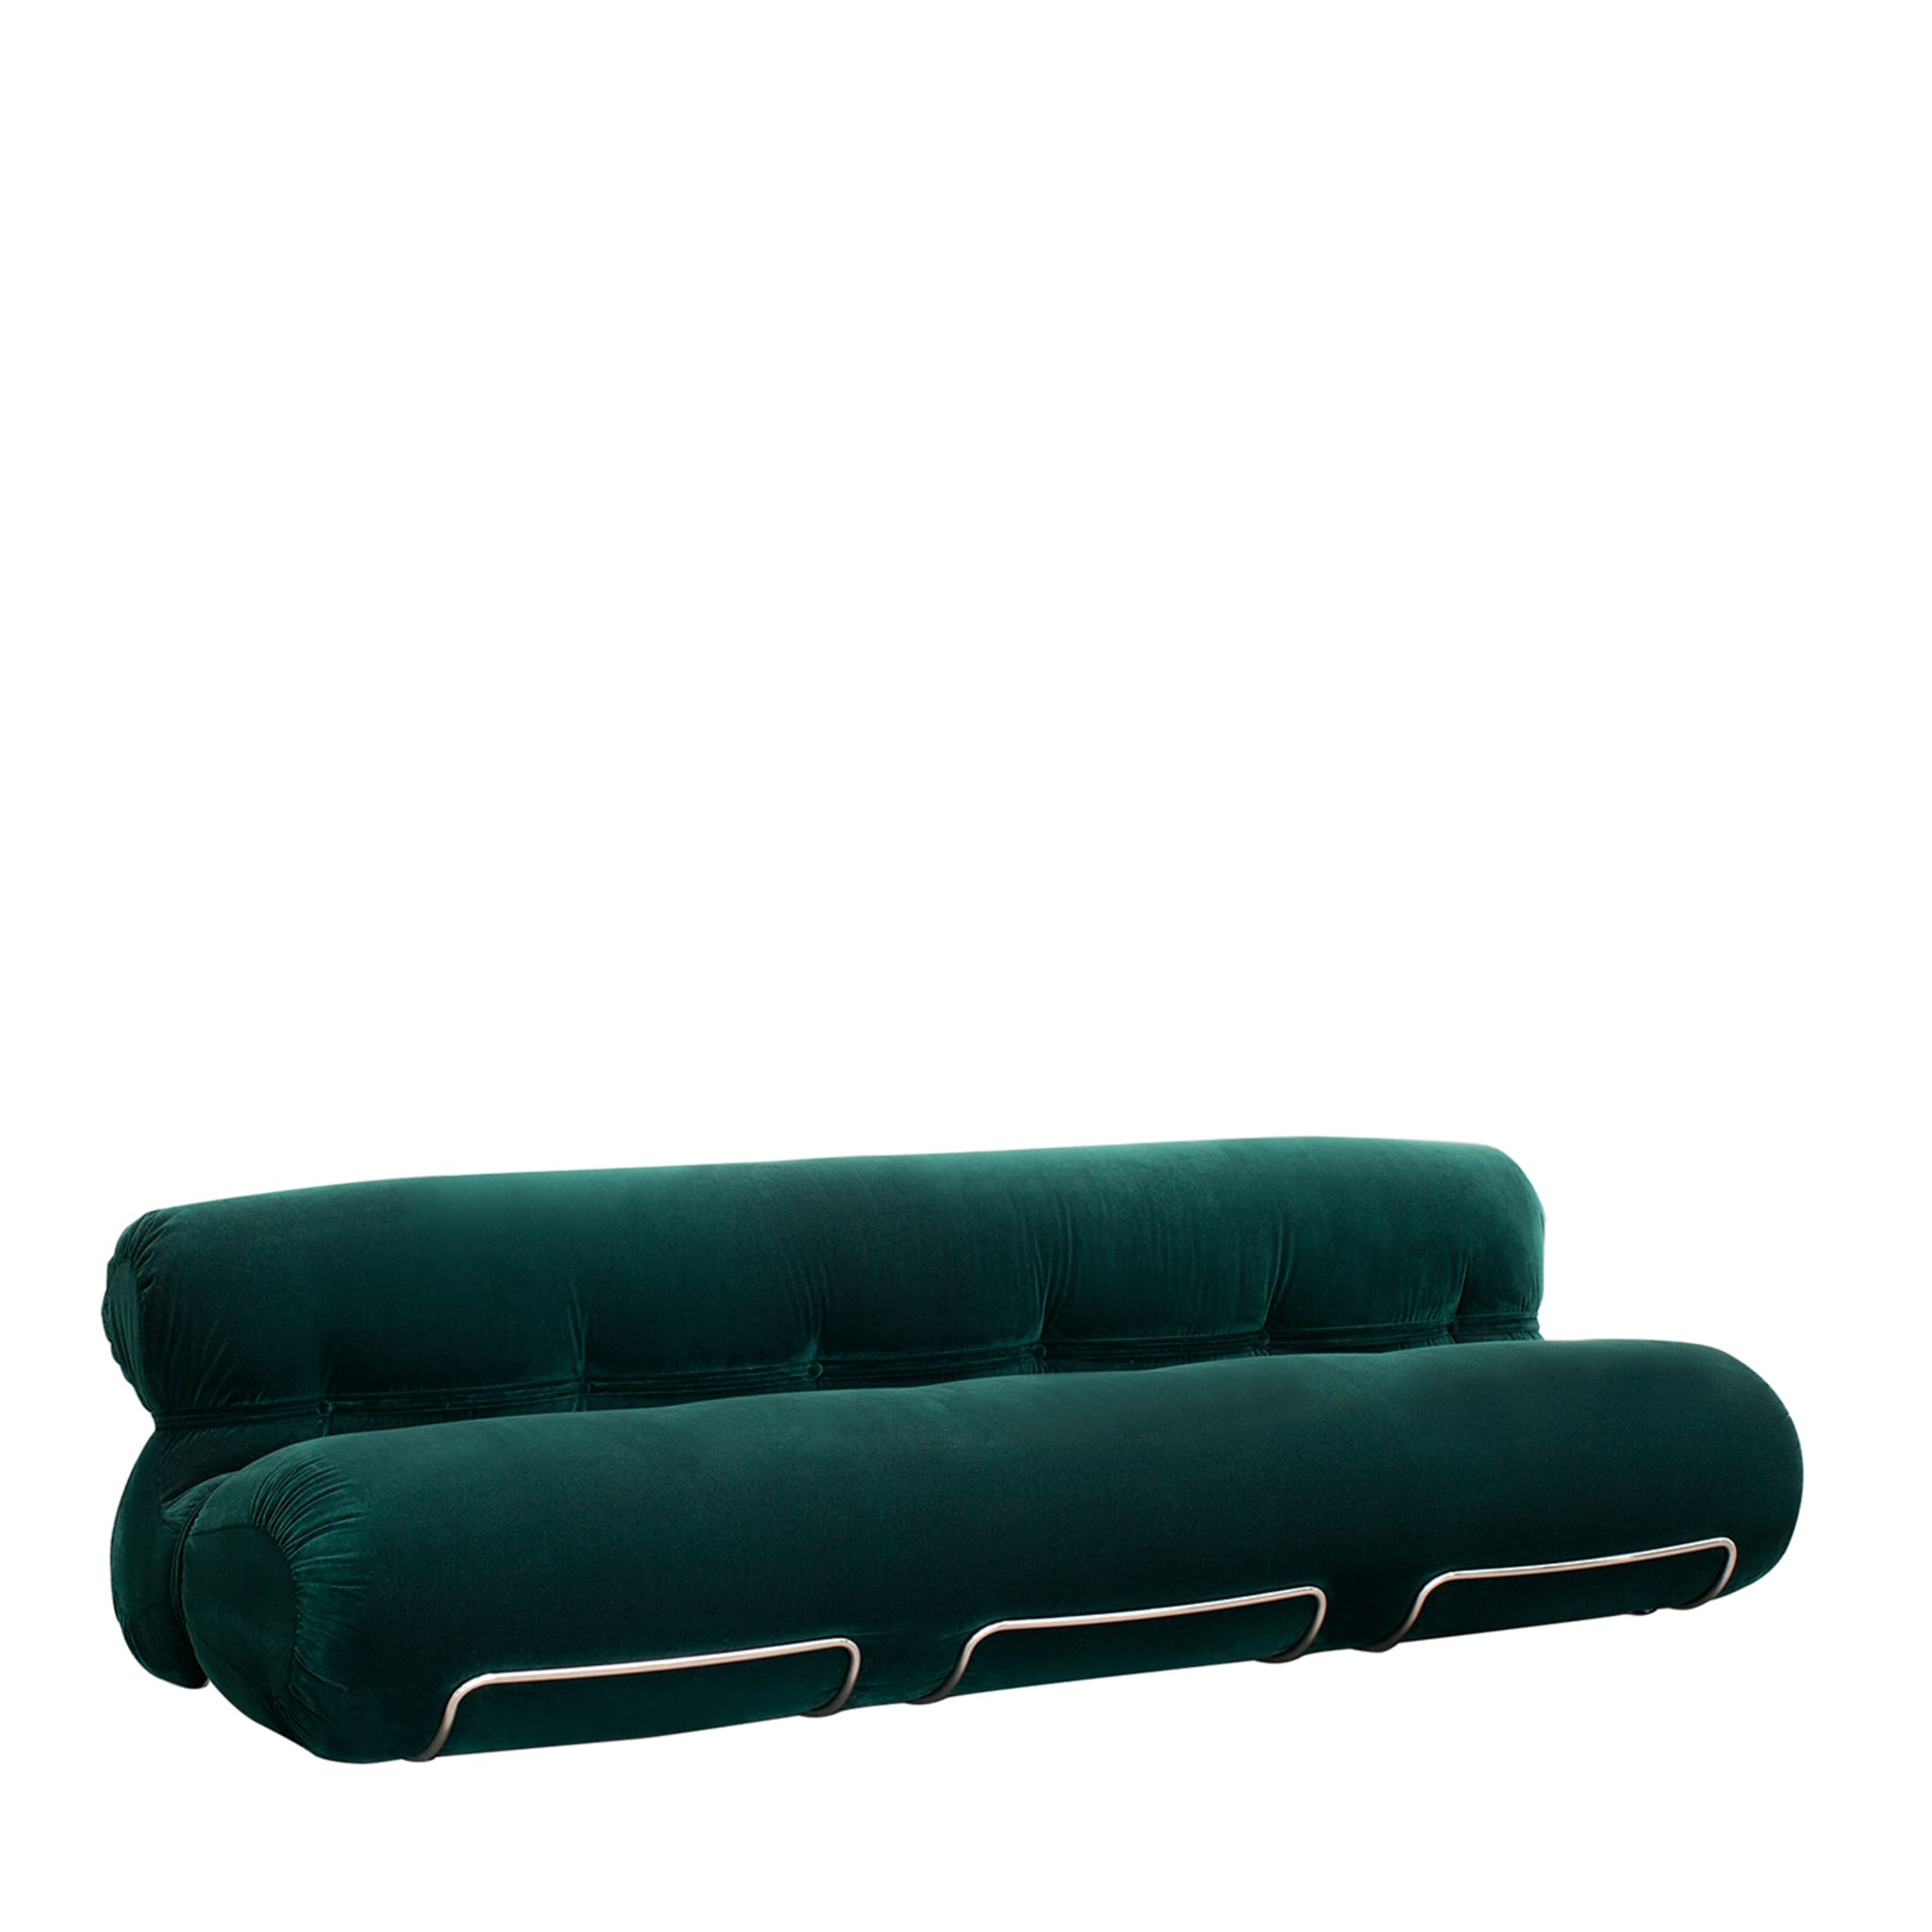 Orsola 3-Seater Emerald Sofa by Gastone Rinaldi - Main view